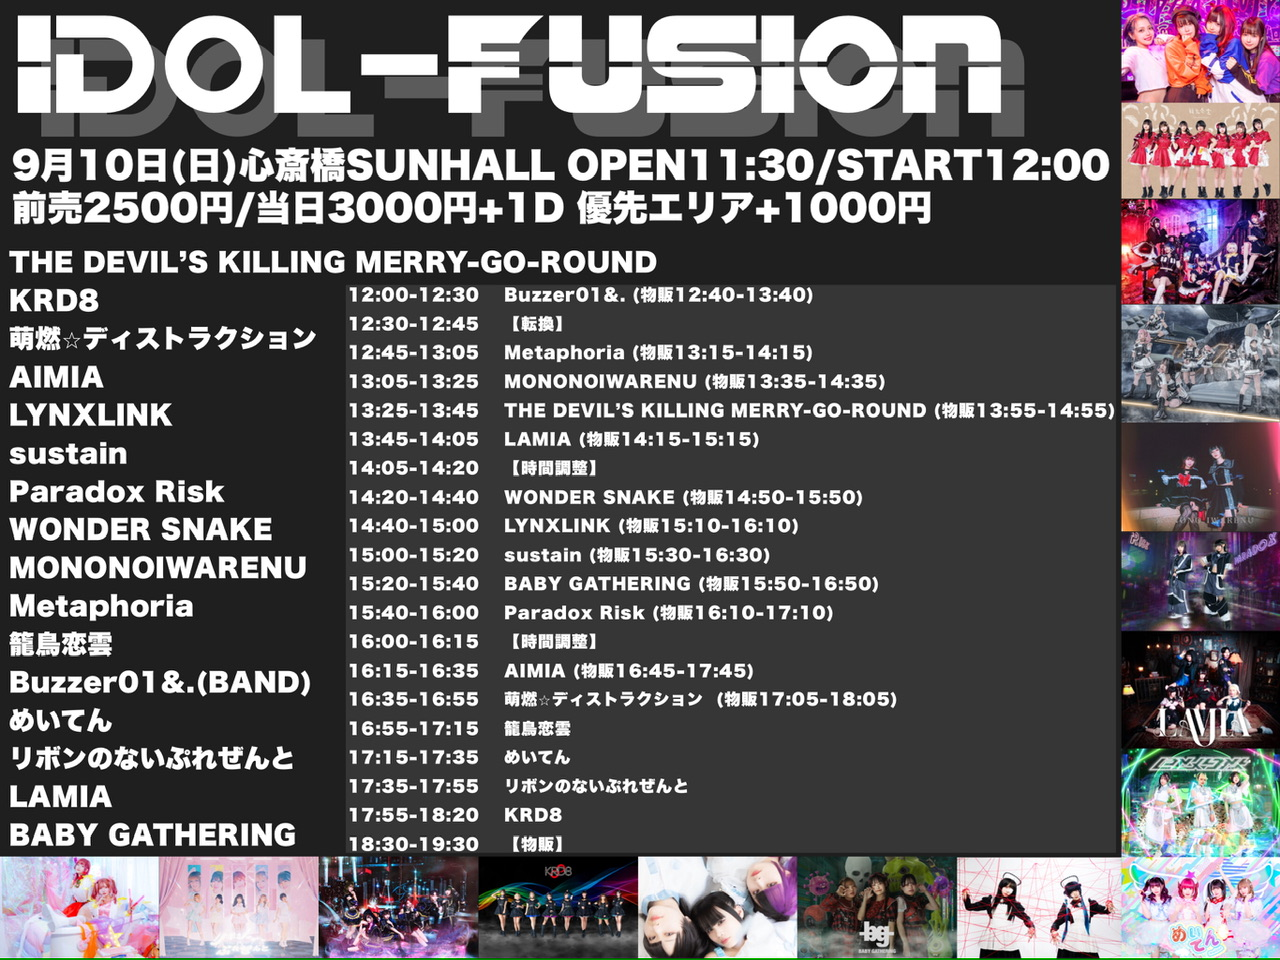 星井あおサポート出演公演(Buzzer01&.)「iDOL-fusion」